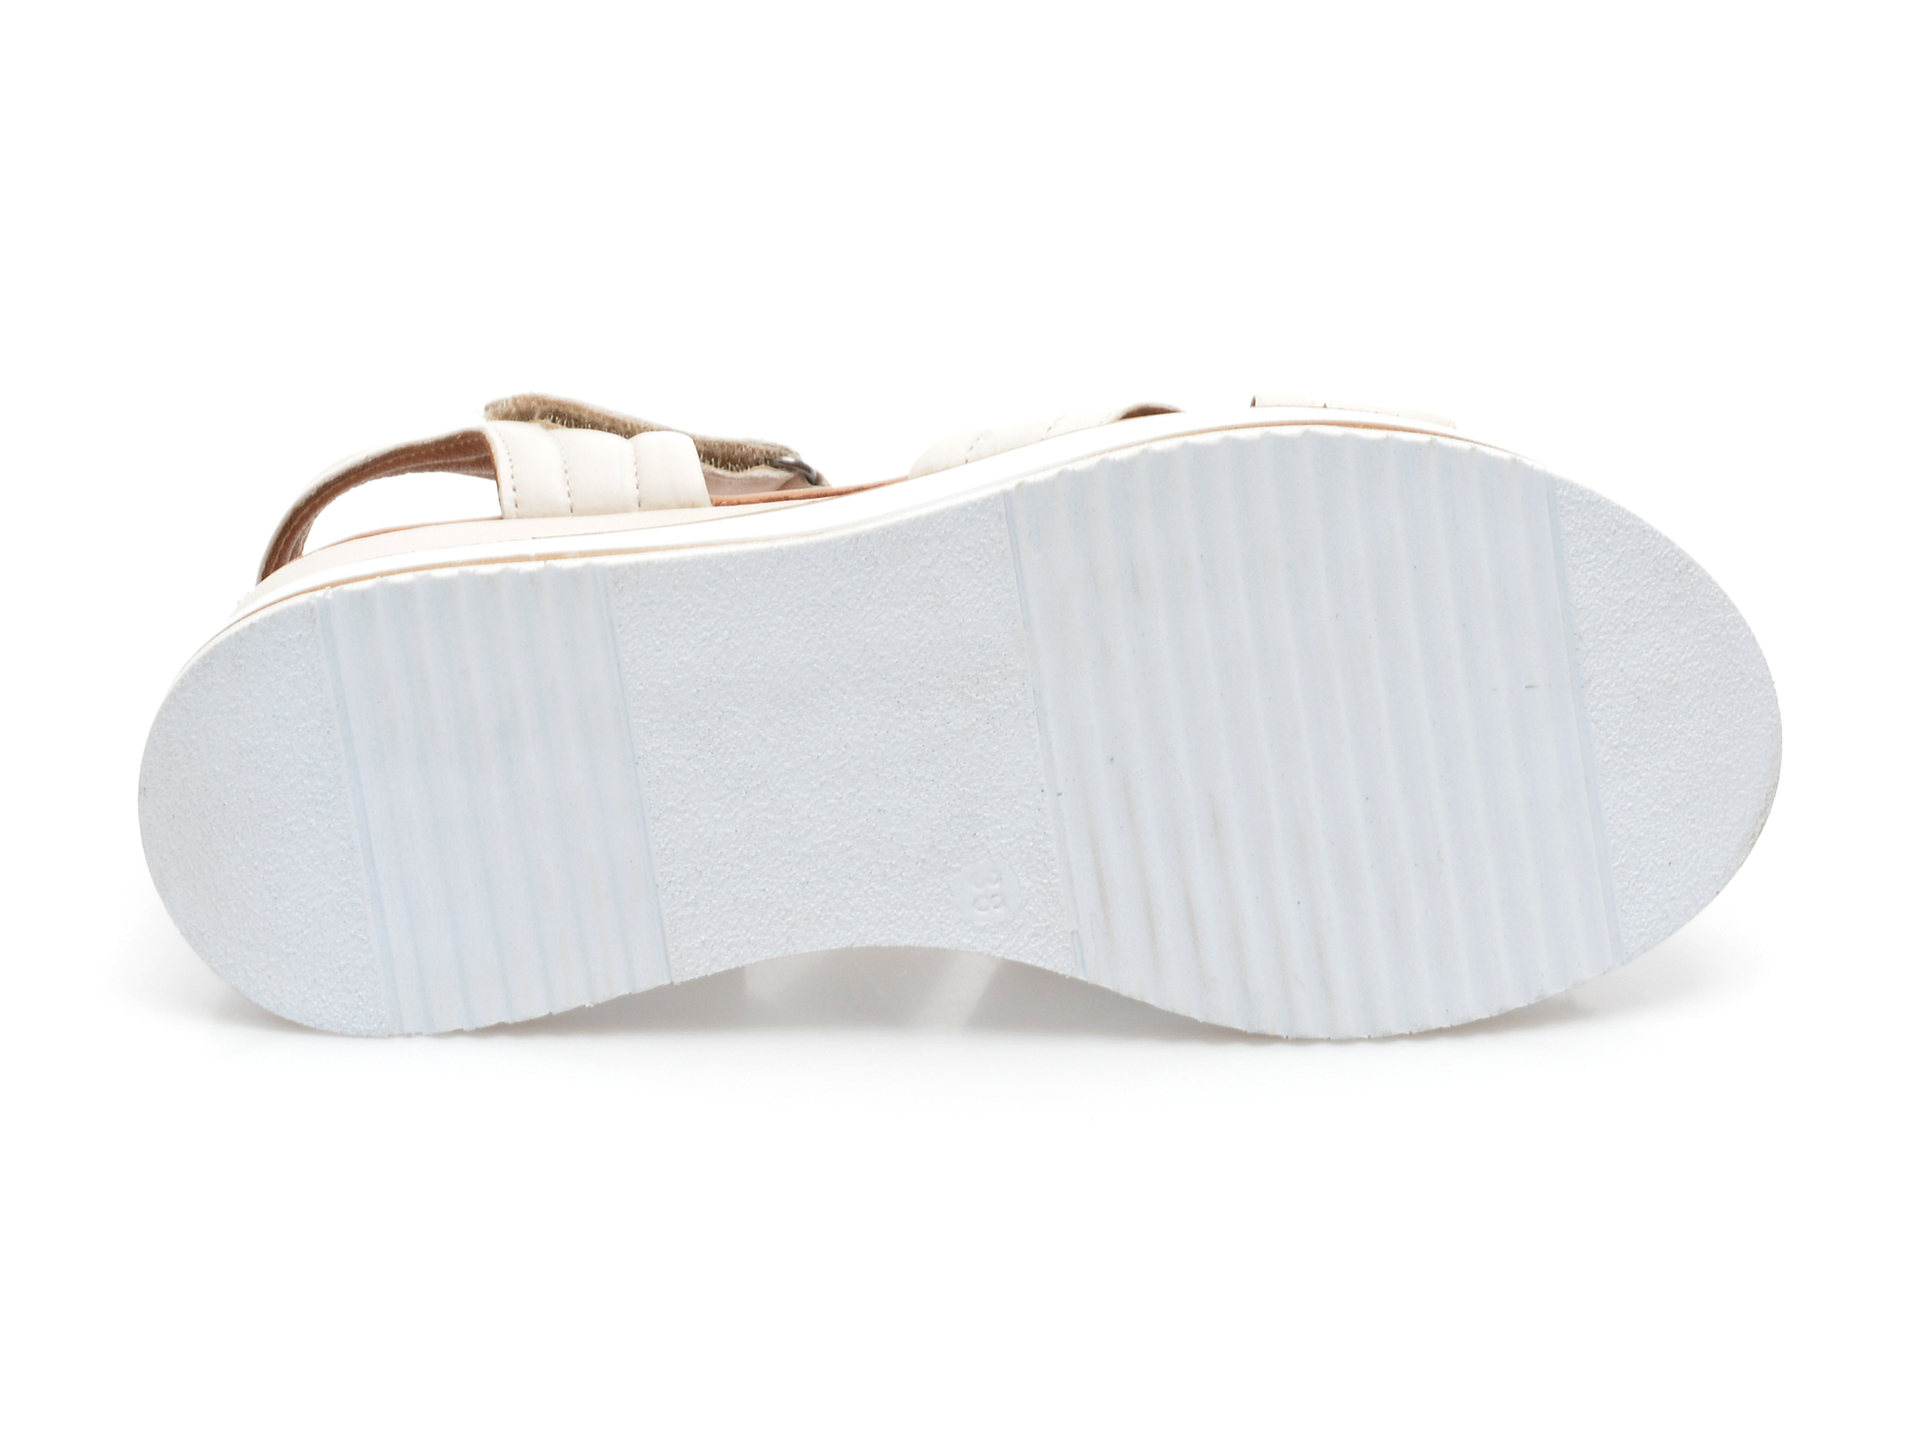 Poze Sandale ANNA LUCCI albe, 1200, din piele naturala tezyo.ro